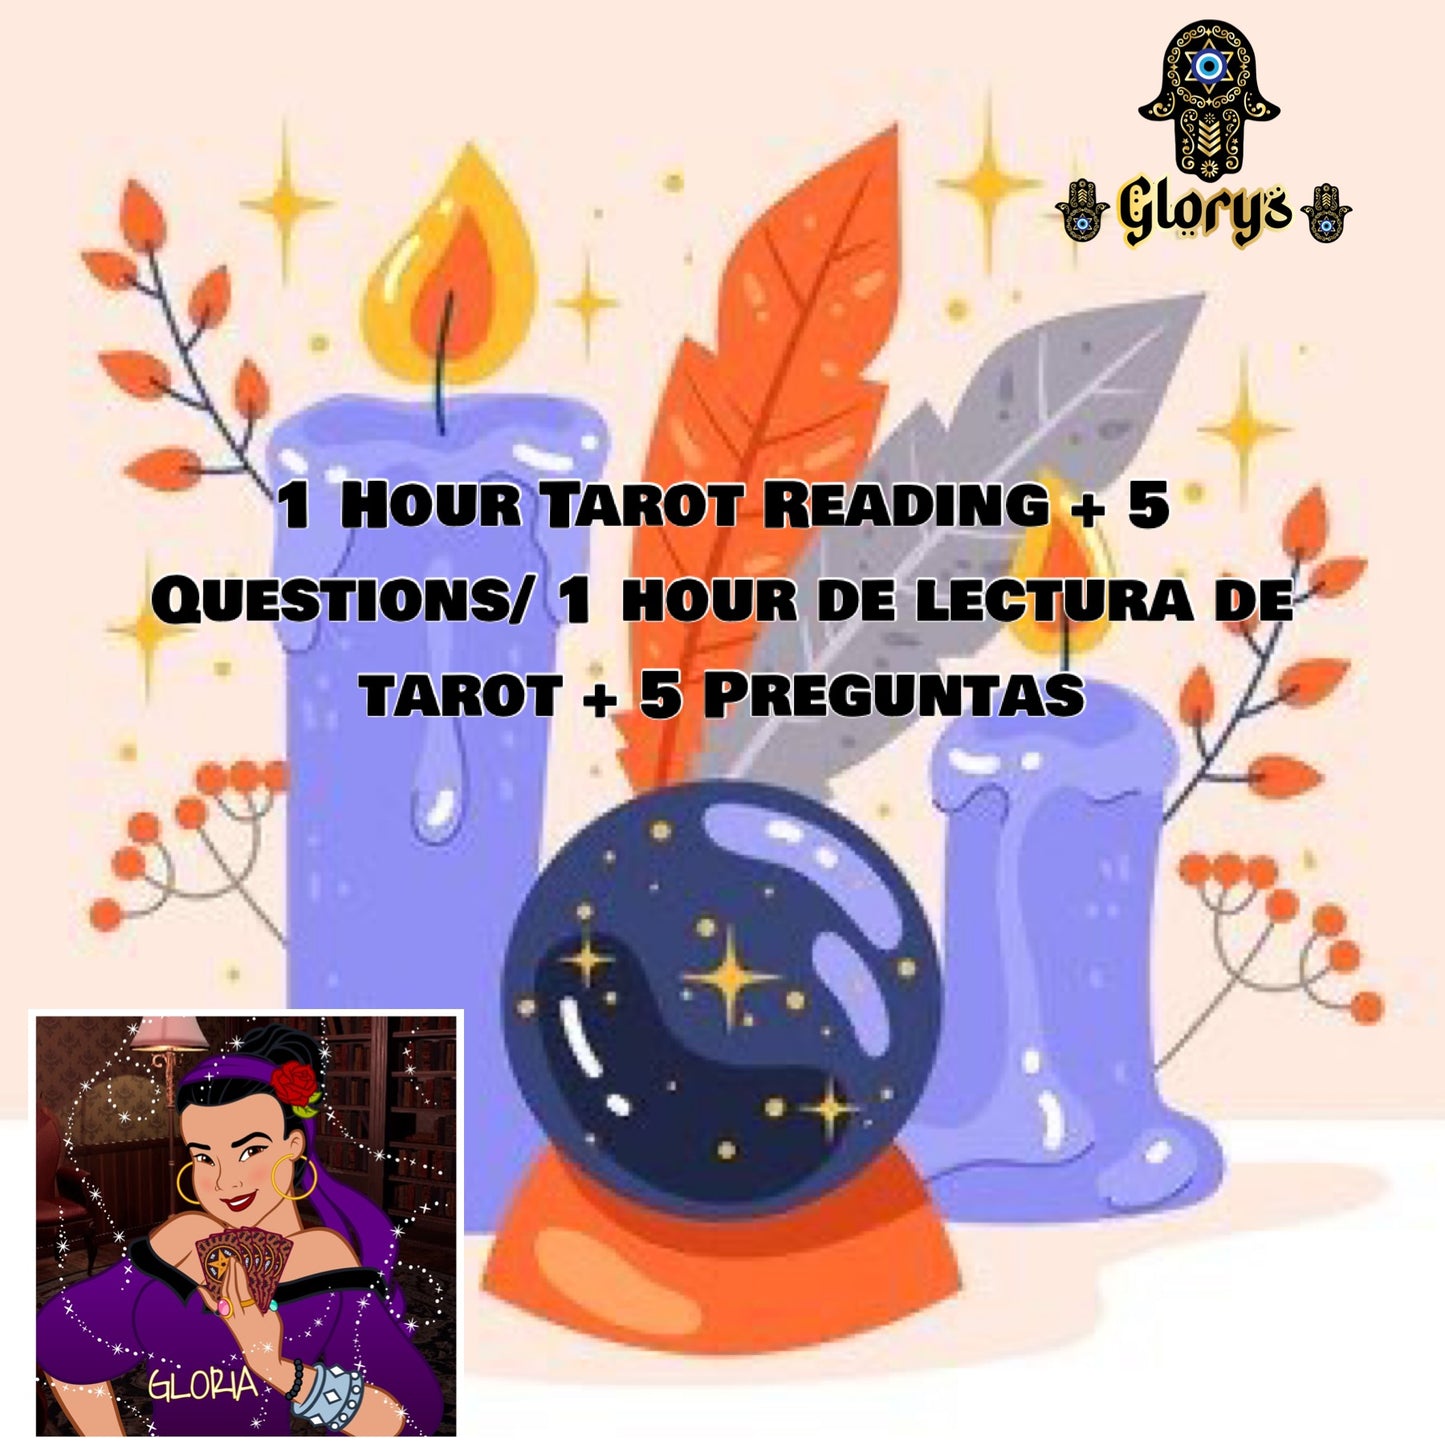 1 Hour Tarot Reading + 5 Questions/ Consuta de tarot de 1 hora + 5 preguntas